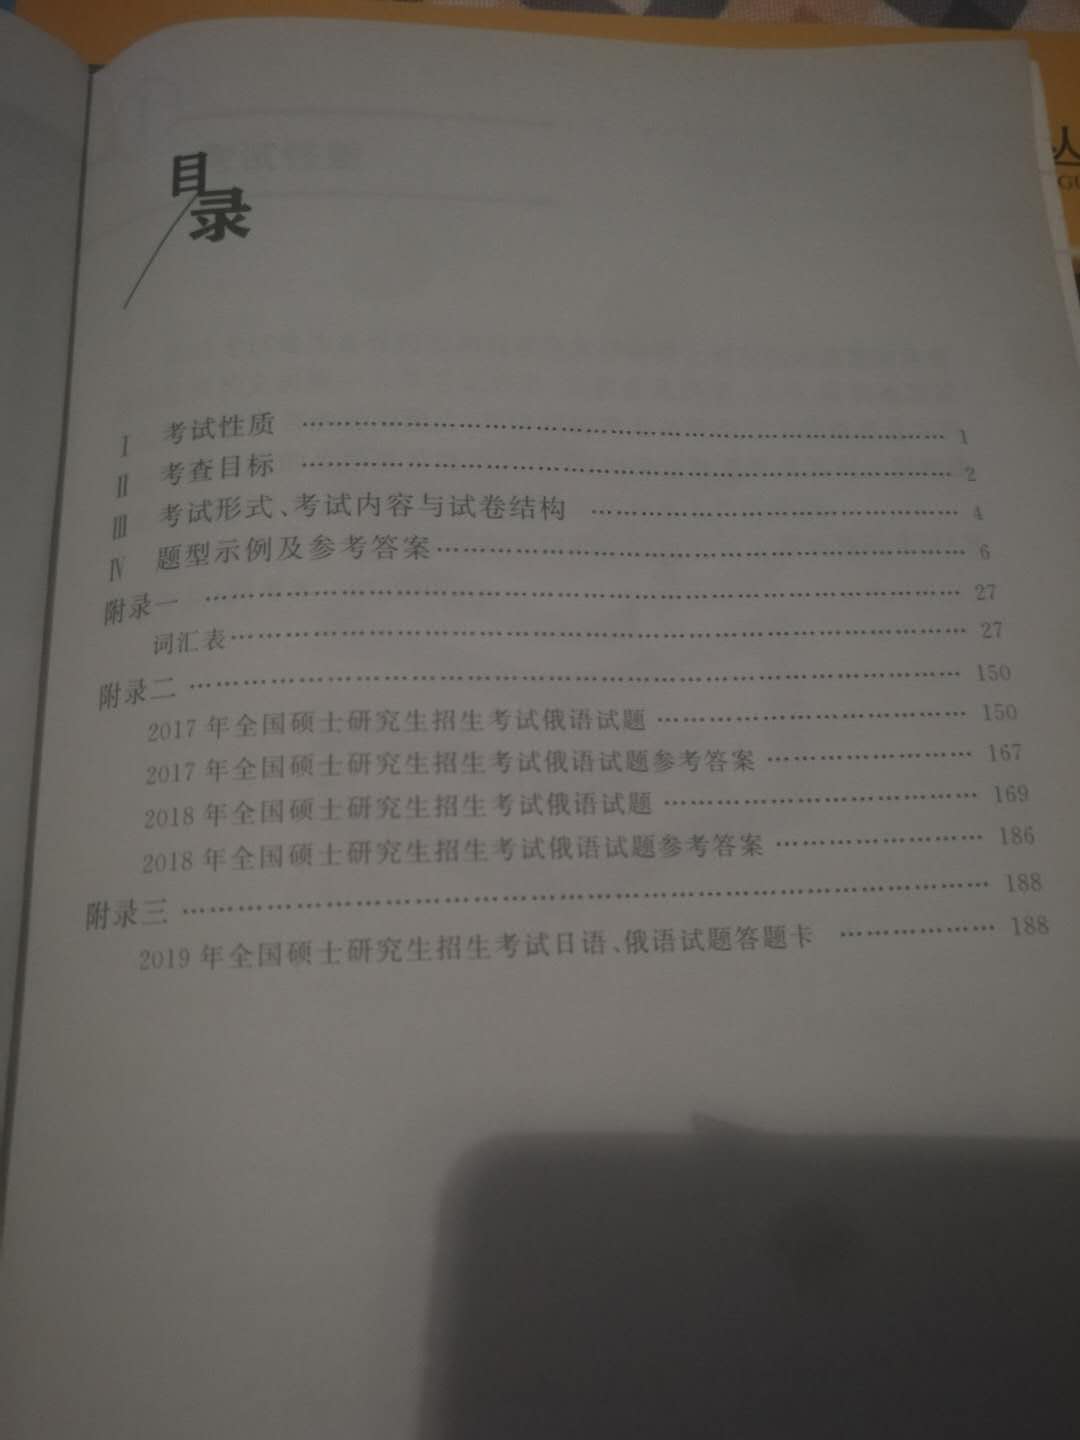 书比想象的小，题型写的挺清楚的，但单词没有汉语意思(??•?•??)